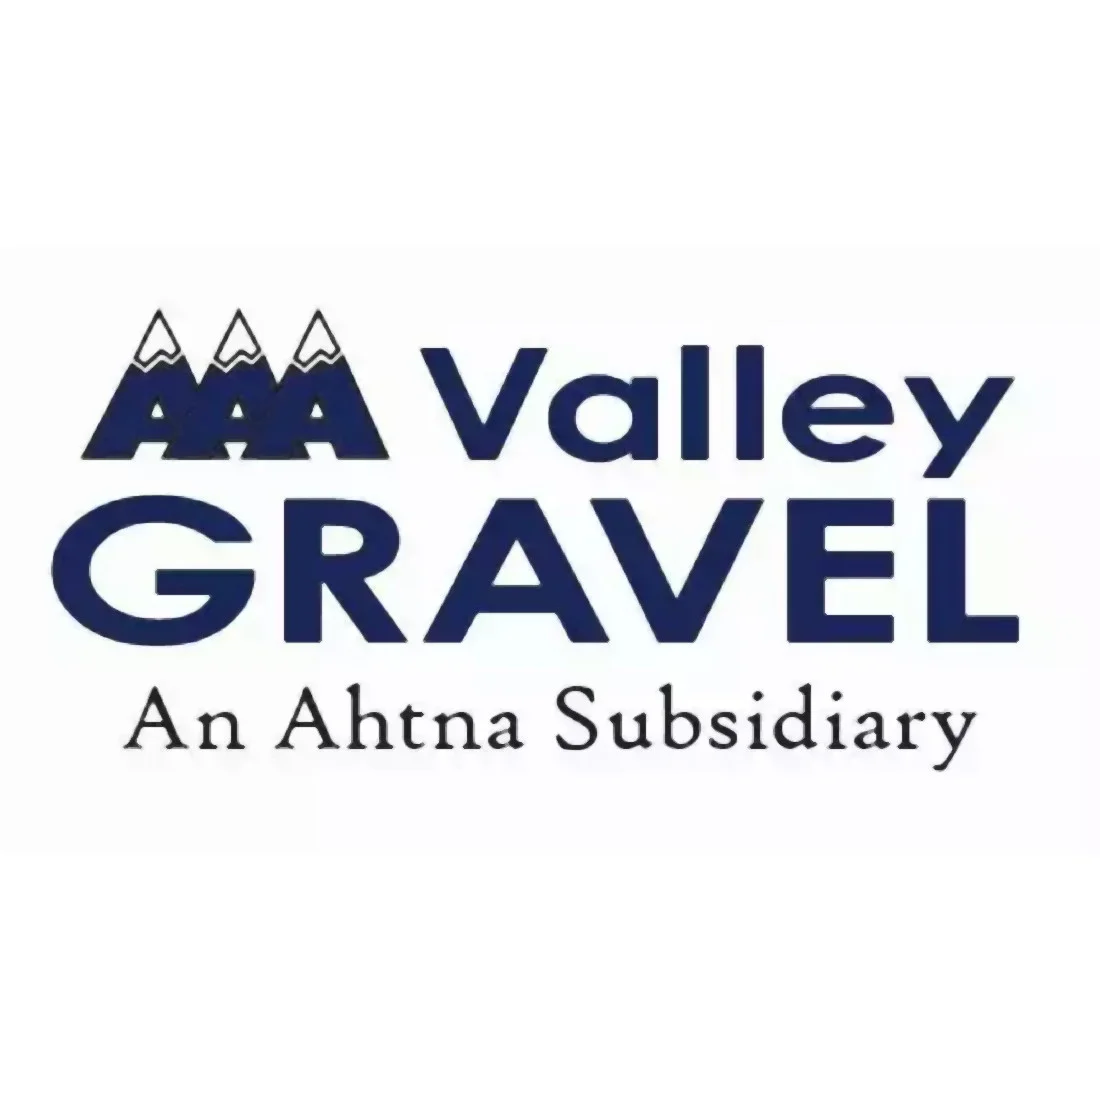 AAA Valley